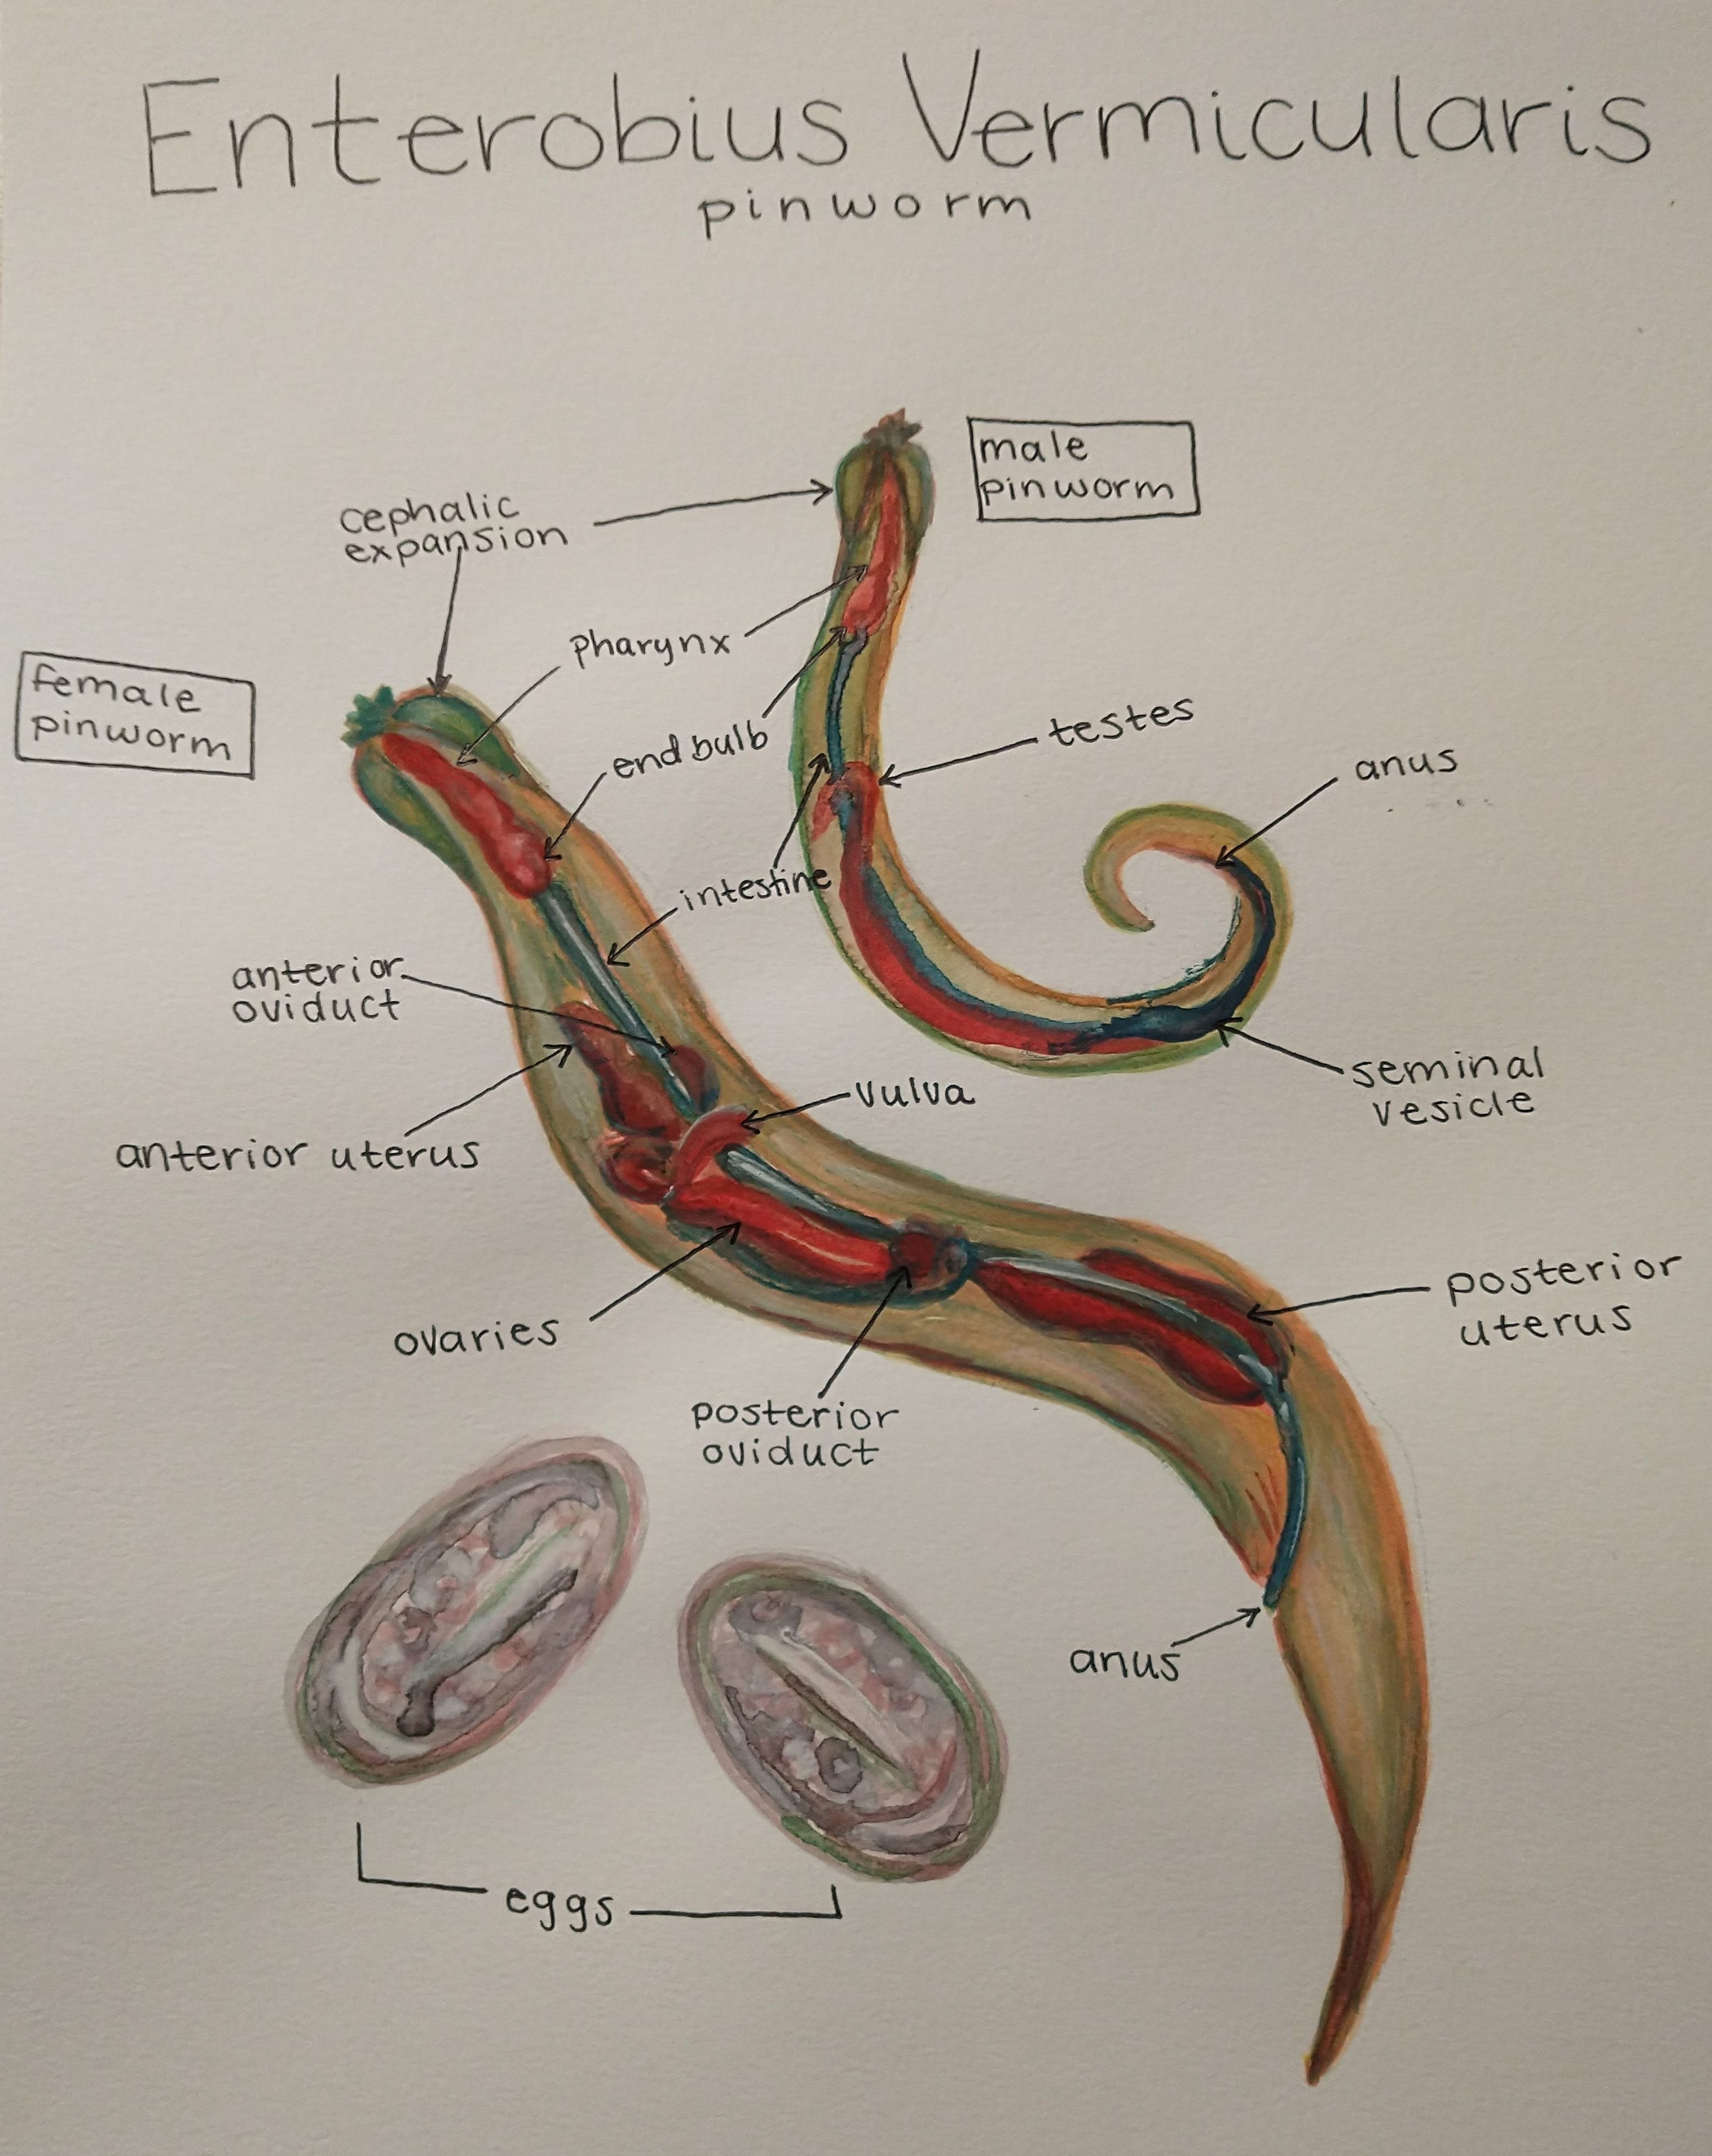 Anatomy of Enterobius Vermicularis